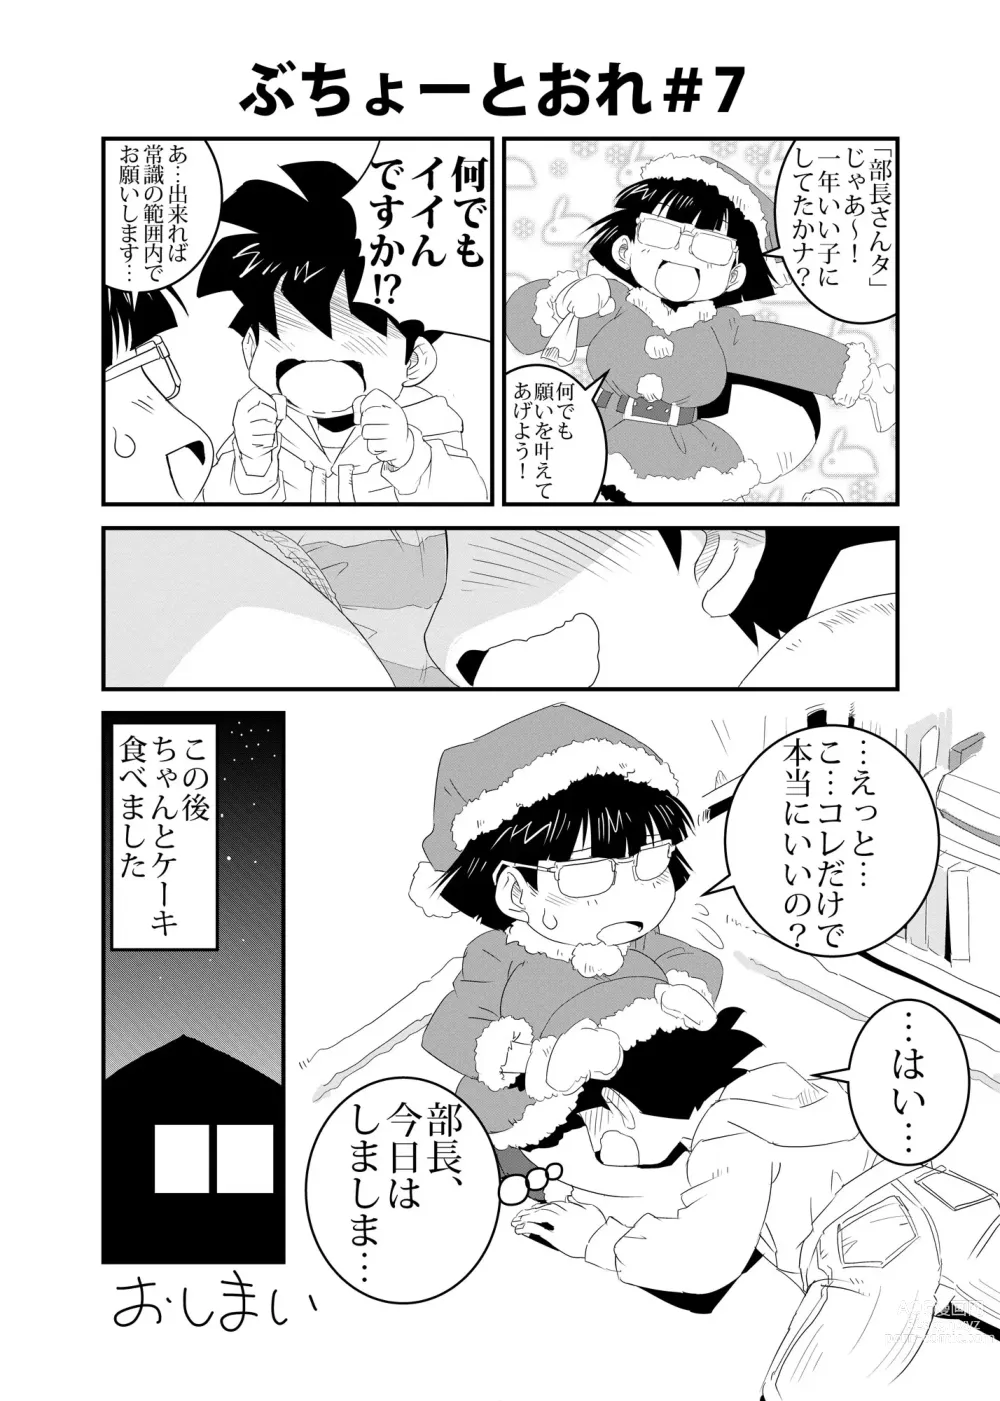 Page 7 of doujinshi Buchou to Ore